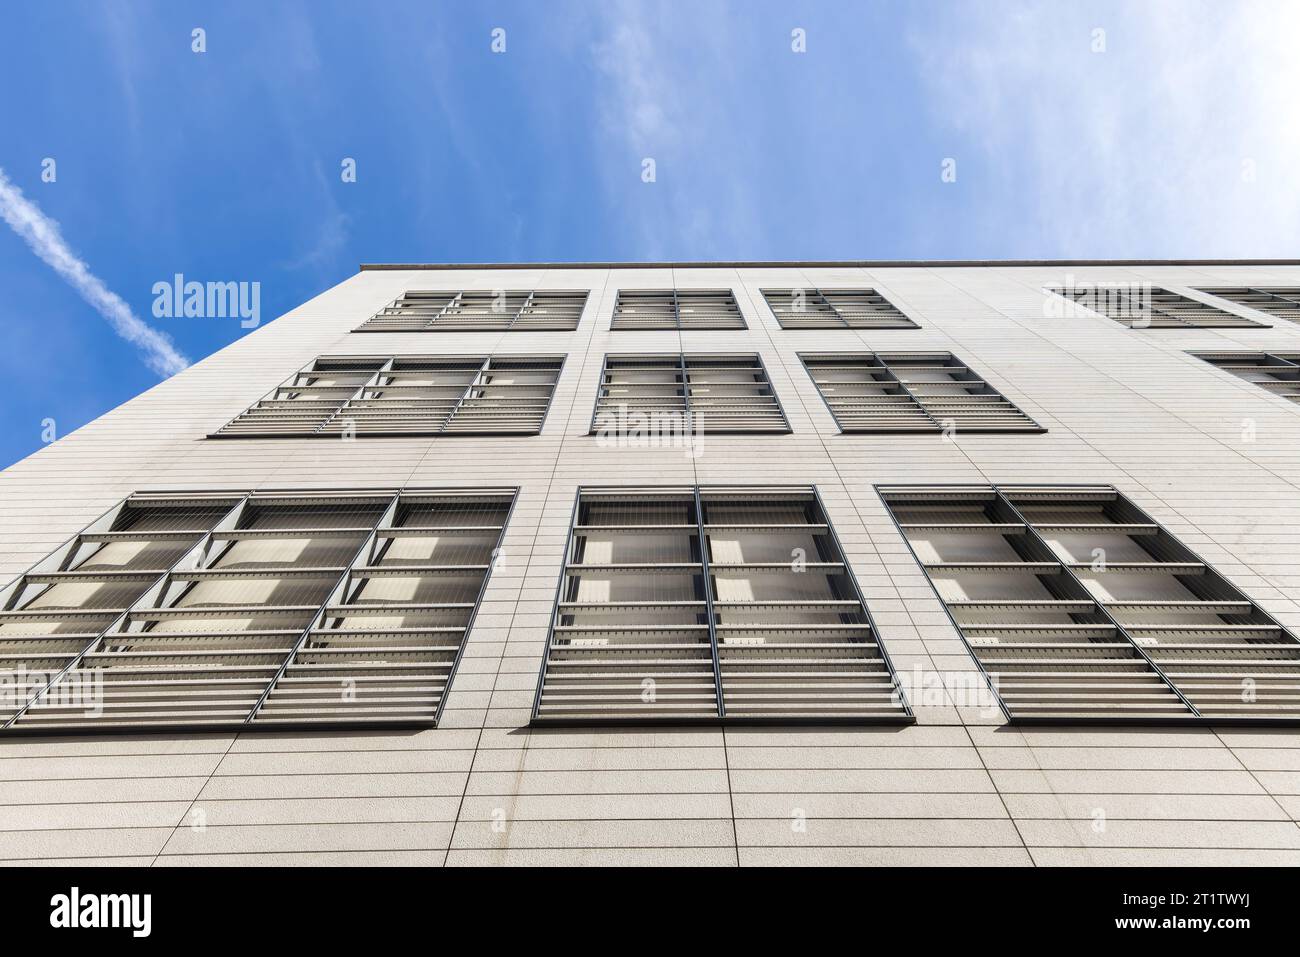 façade d'un immeuble de bureaux avec stores pour la protection solaire Banque D'Images